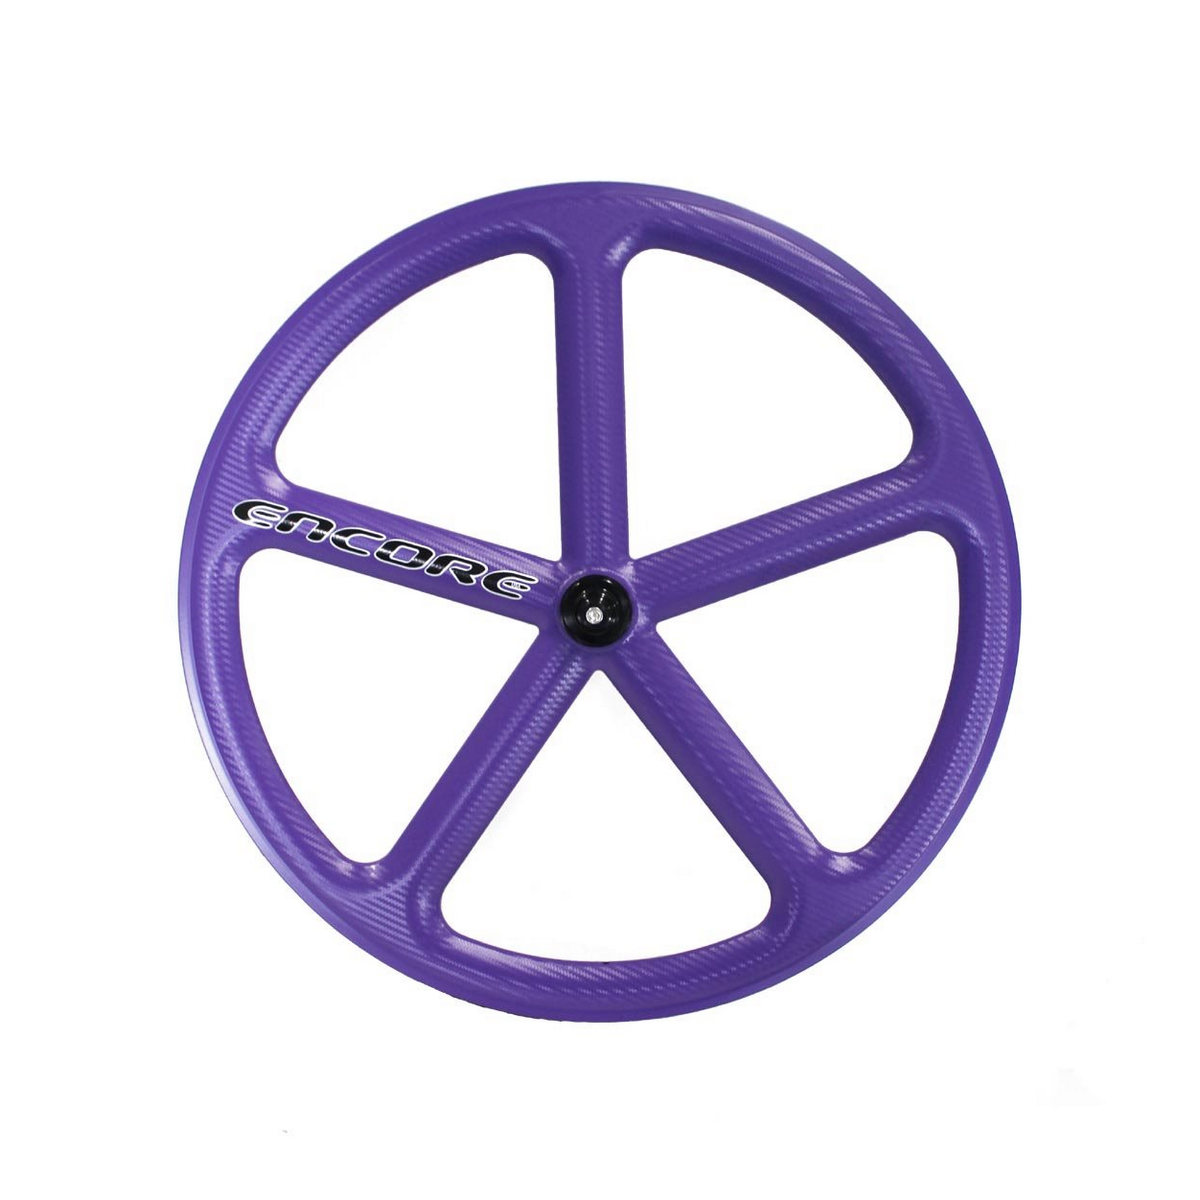 rear wheel 700c track 5 spokes carbon weave purple nmsw